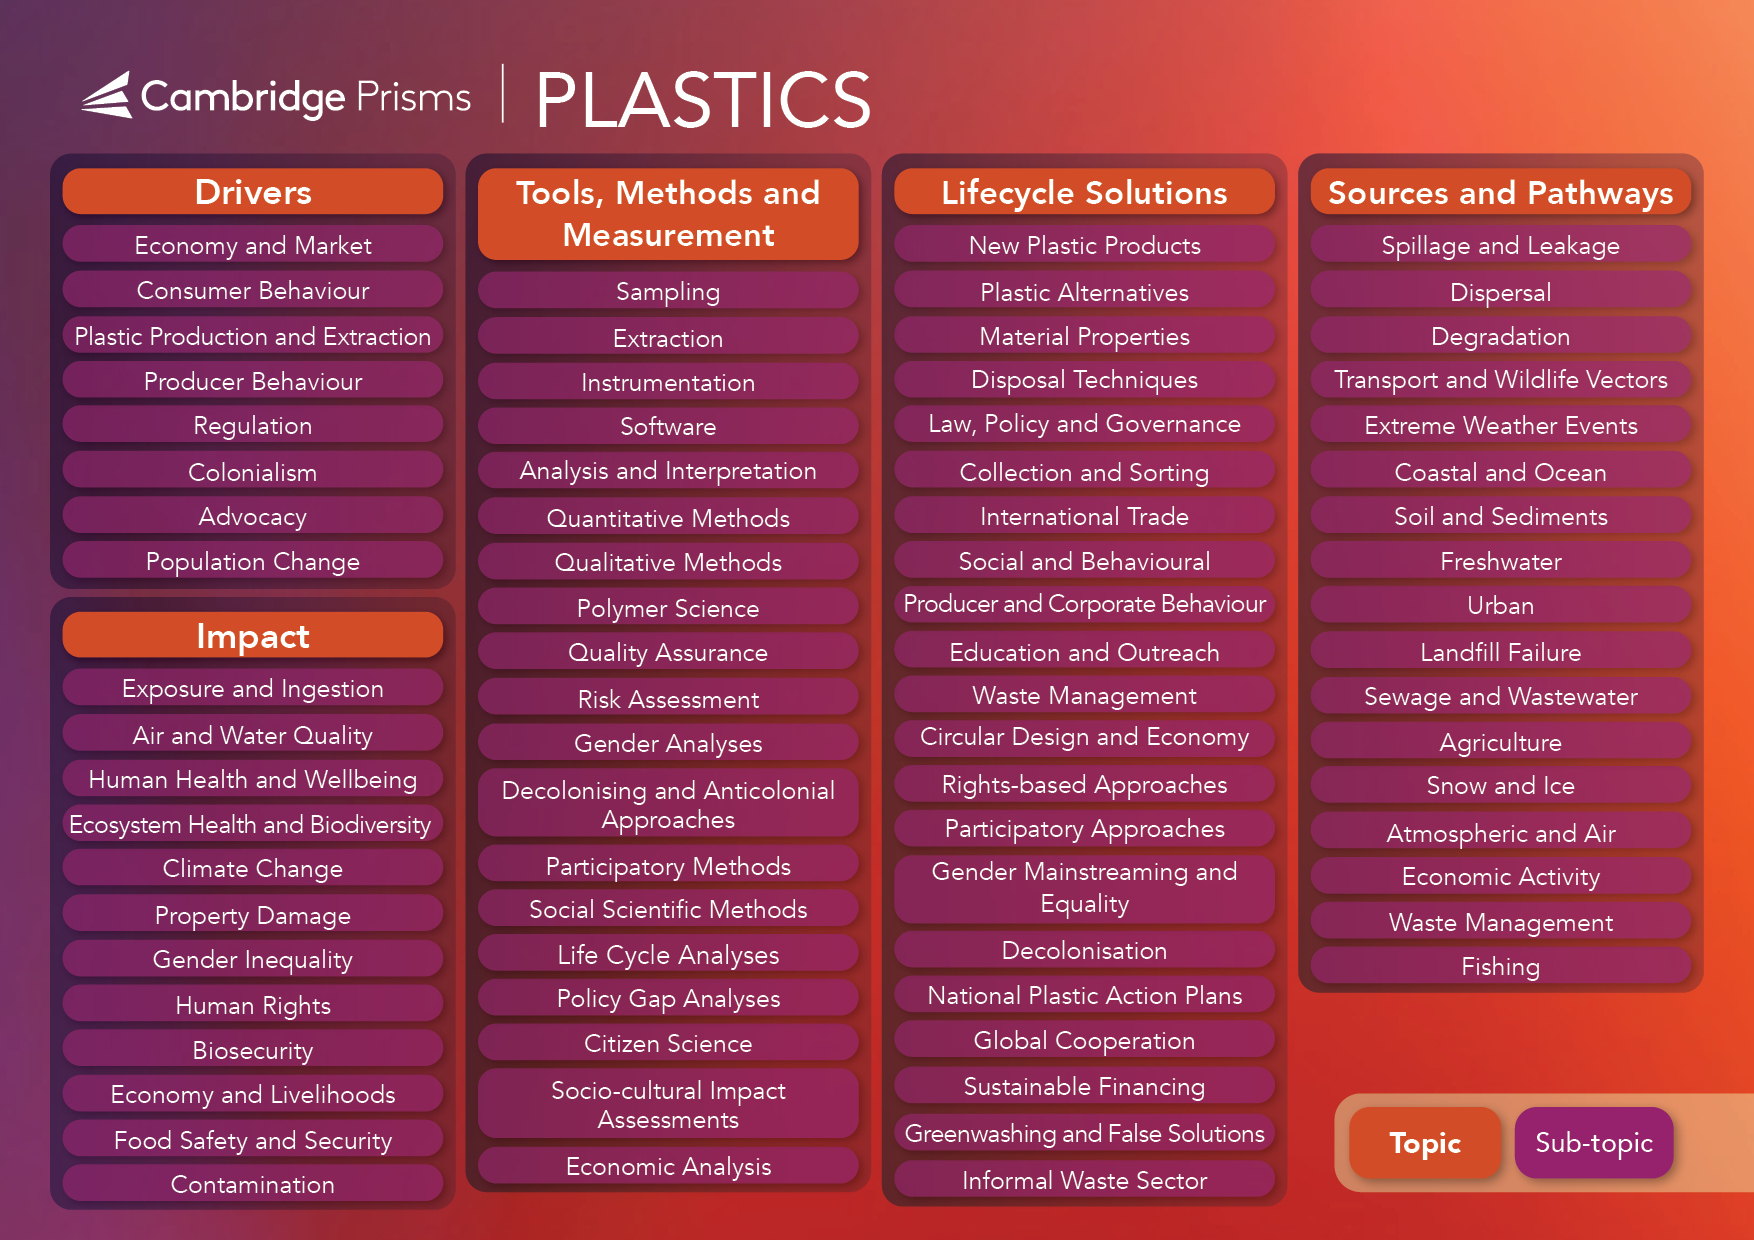 Cambridge Prisms Plastics Topic Map